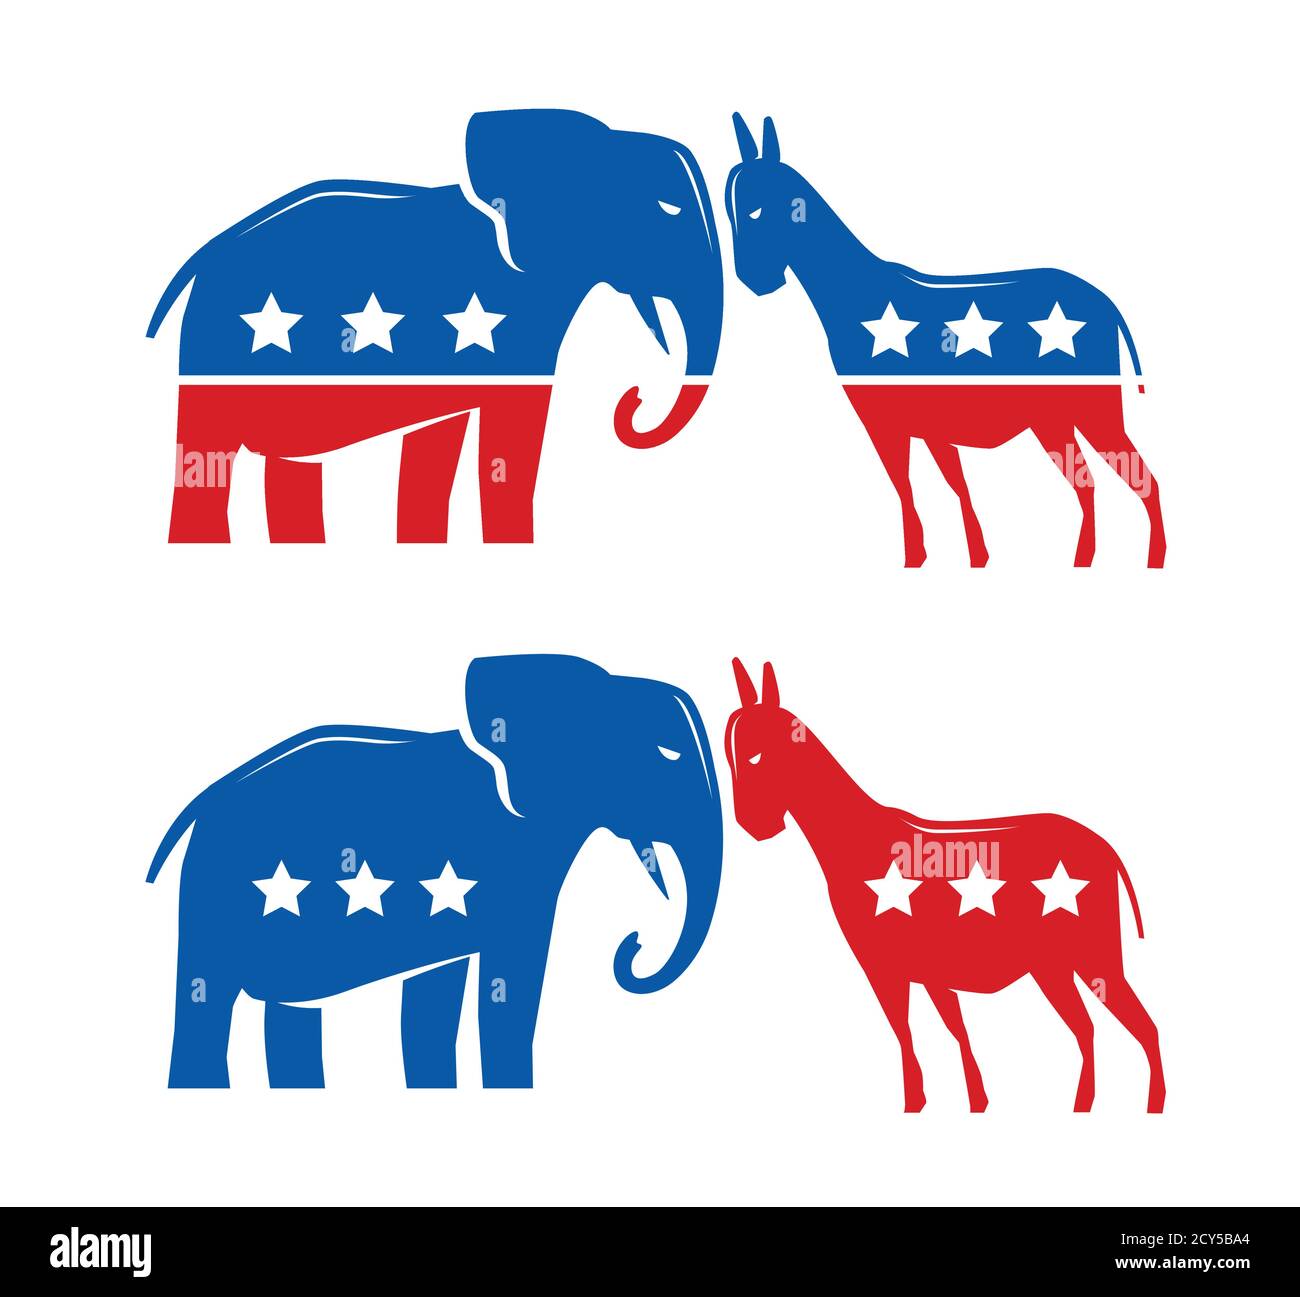 Symboles politiques démocratiques et républicains. Élection, vote, débat politique Illustration de Vecteur